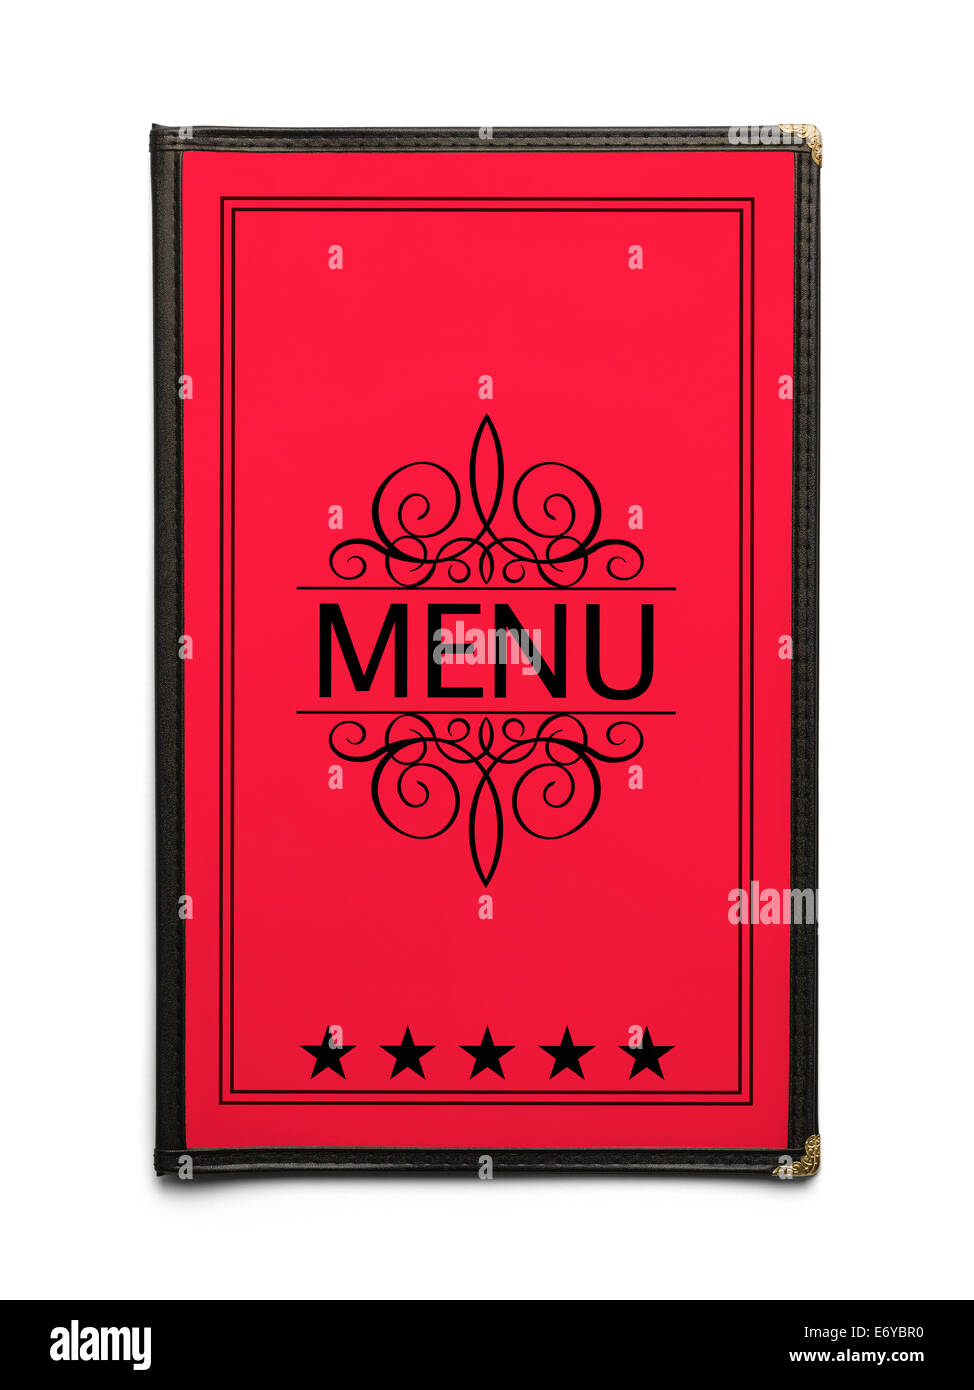 El menú del restaurante Genérico roja con cinco estrellas aislado sobre fondo blanco. Foto de stock